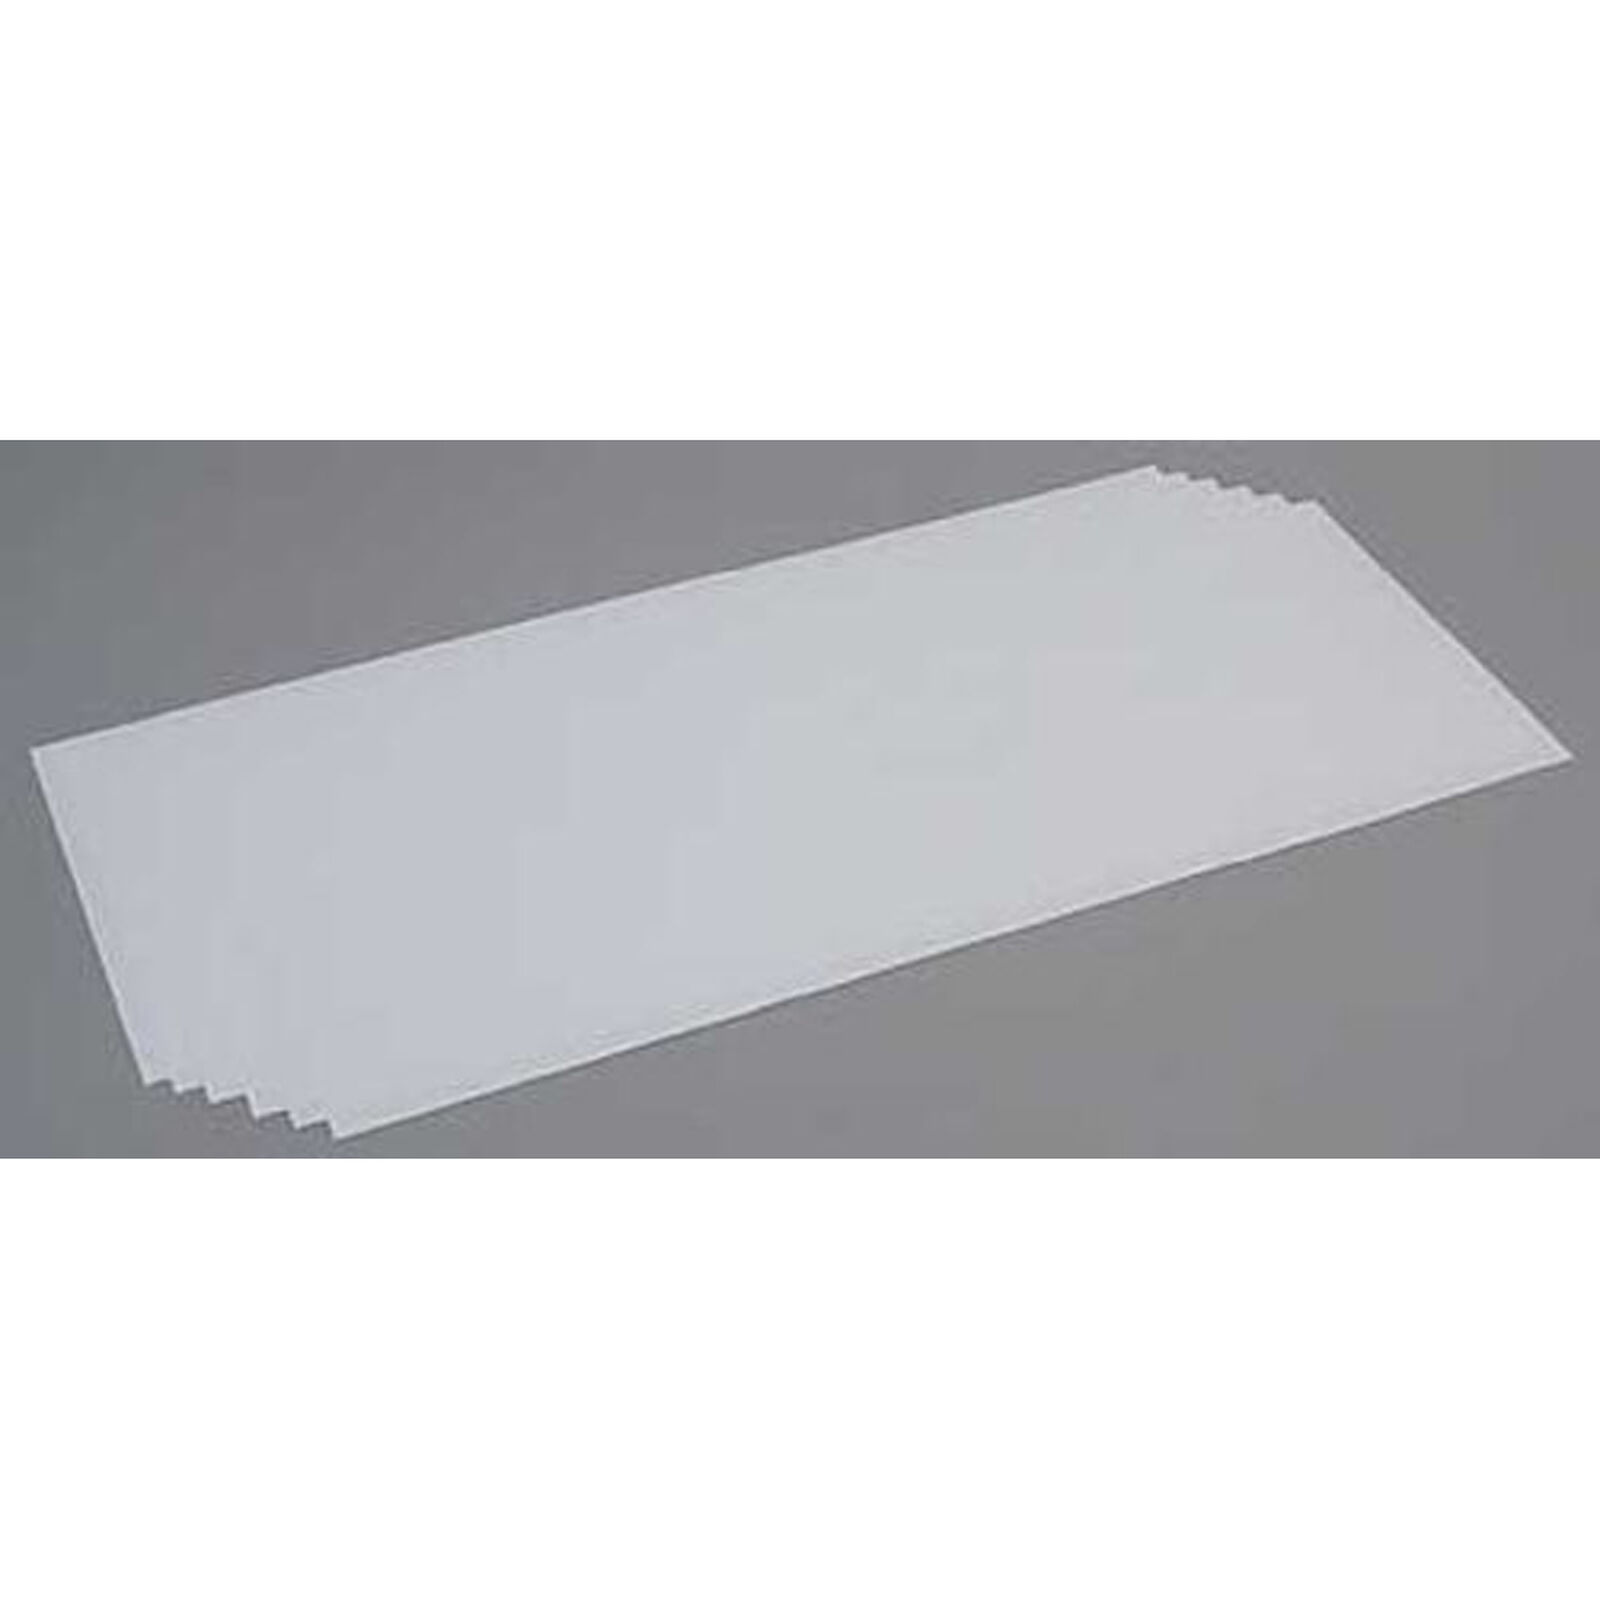 White Sheet .020 x 8 x 21 (6)